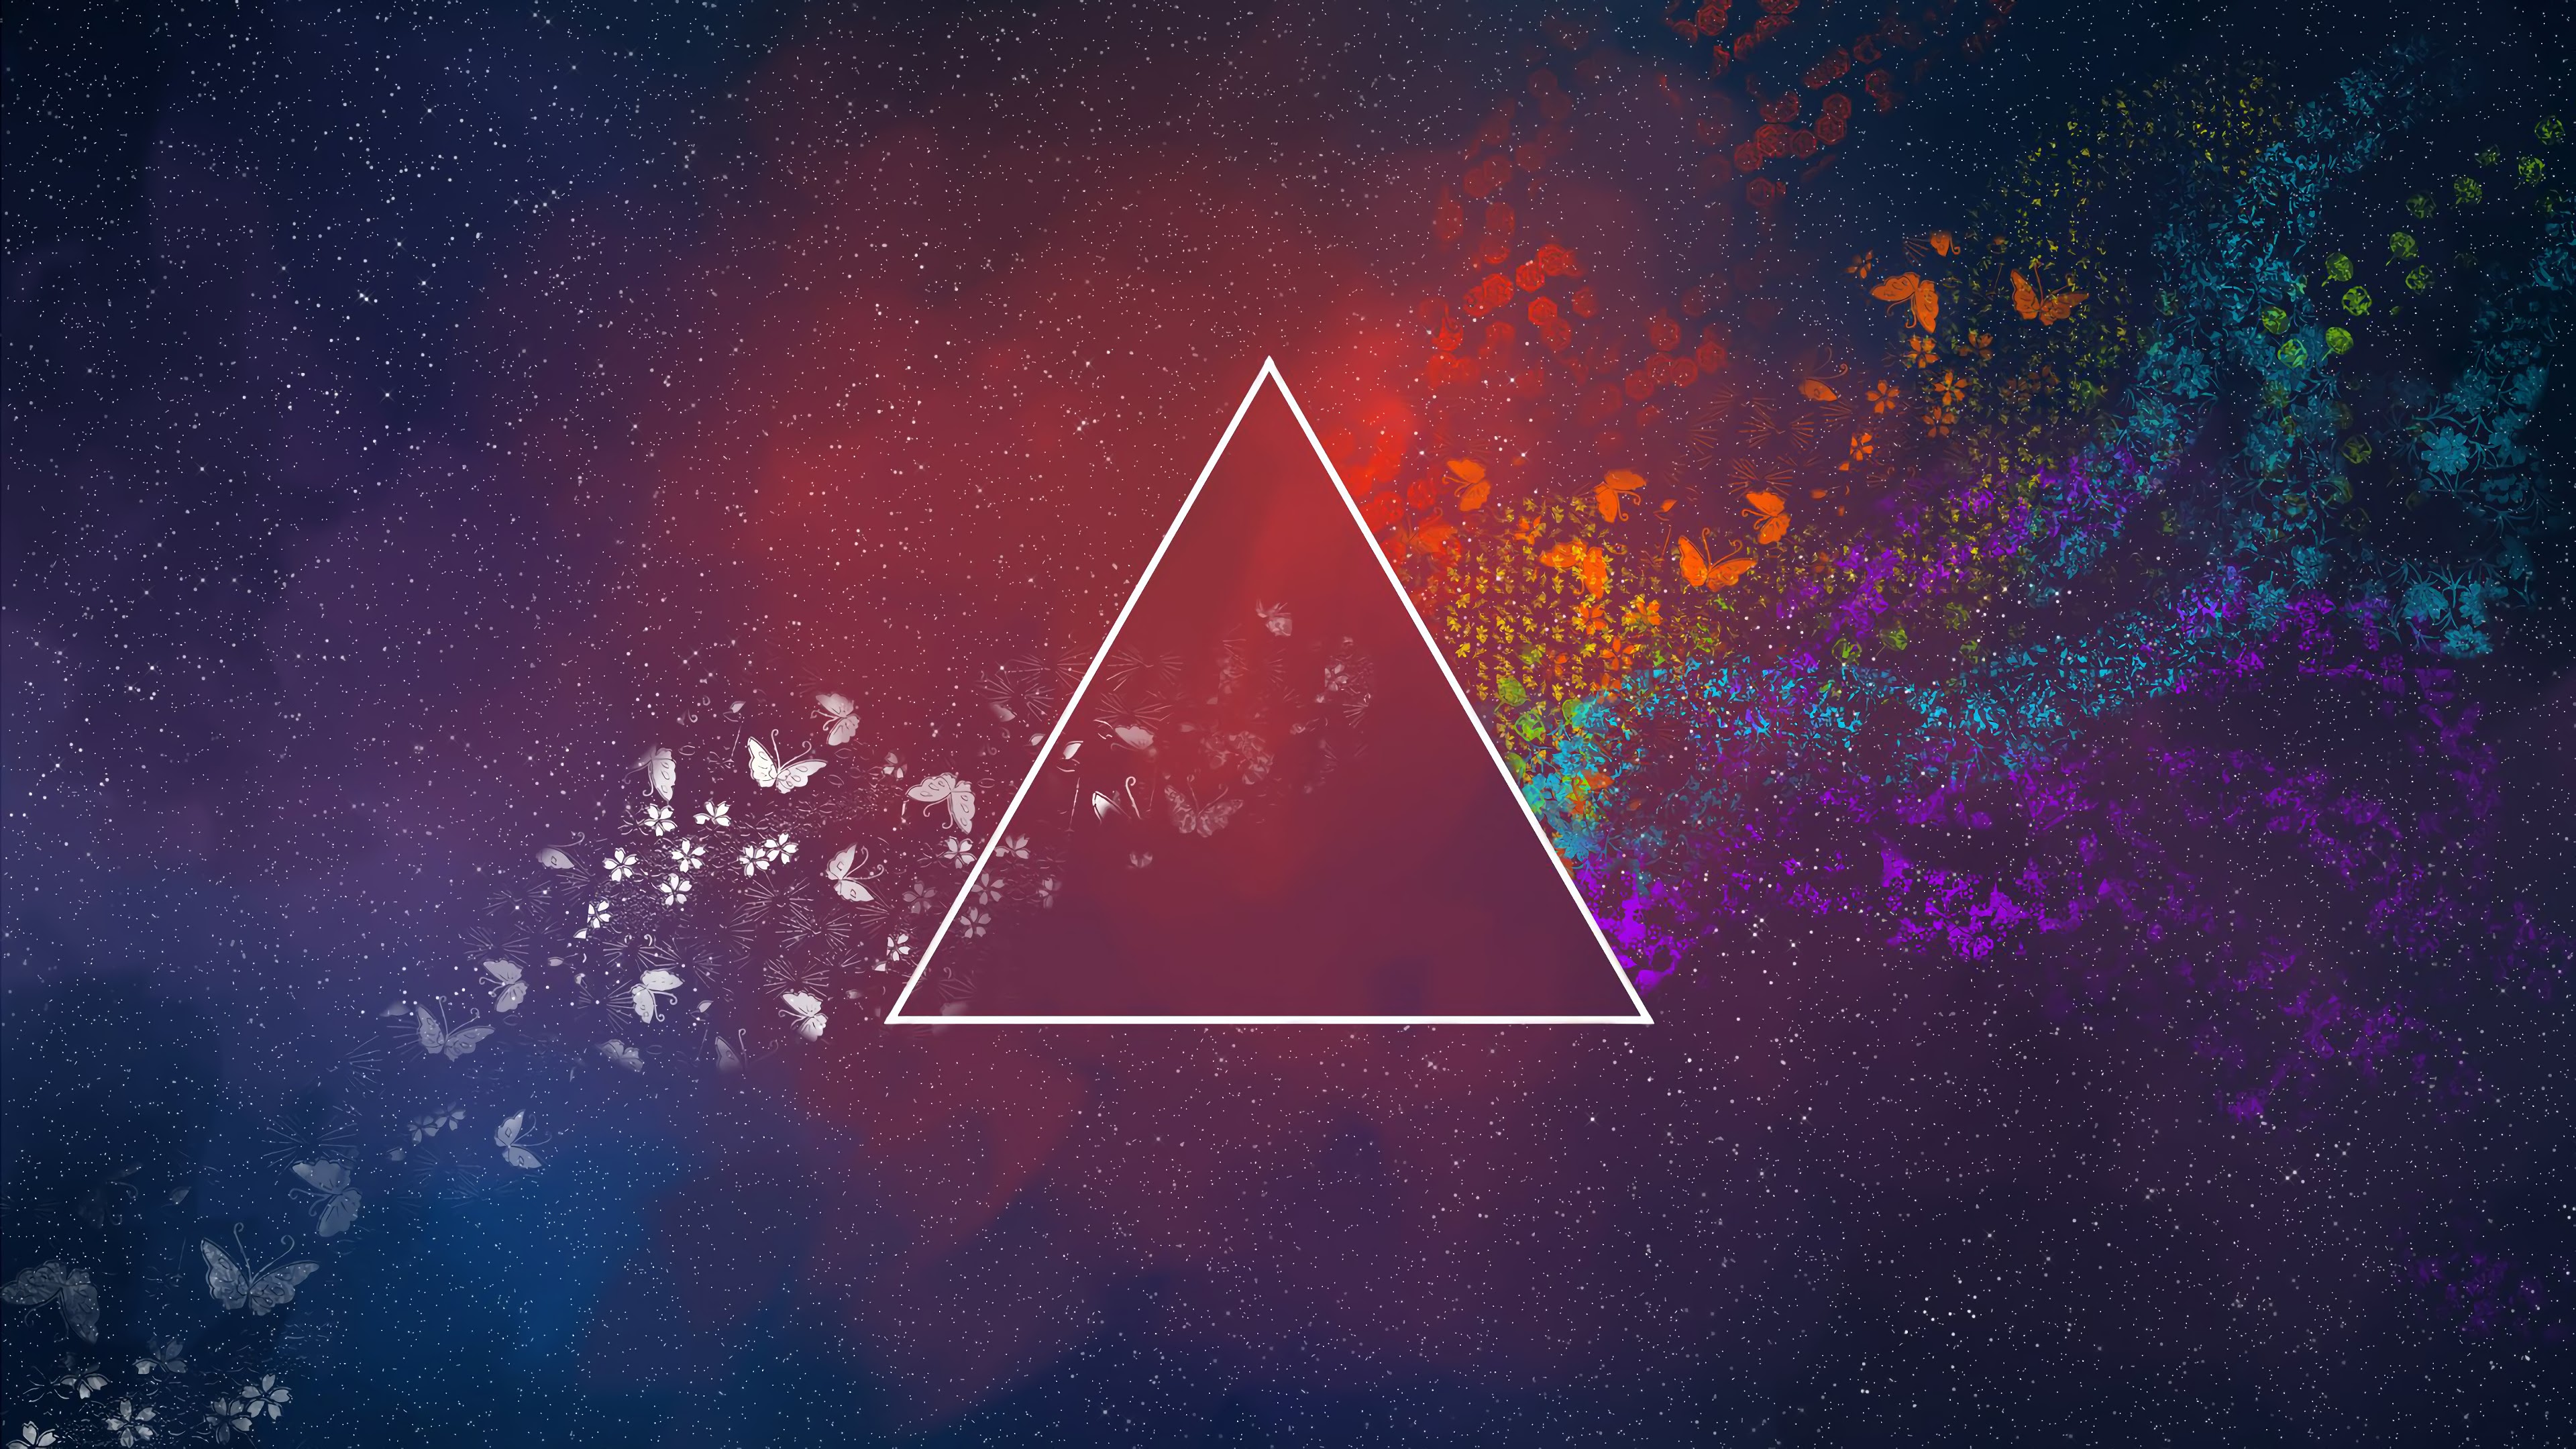 Fondos de pantalla Abstracto universo triángulos mariposas